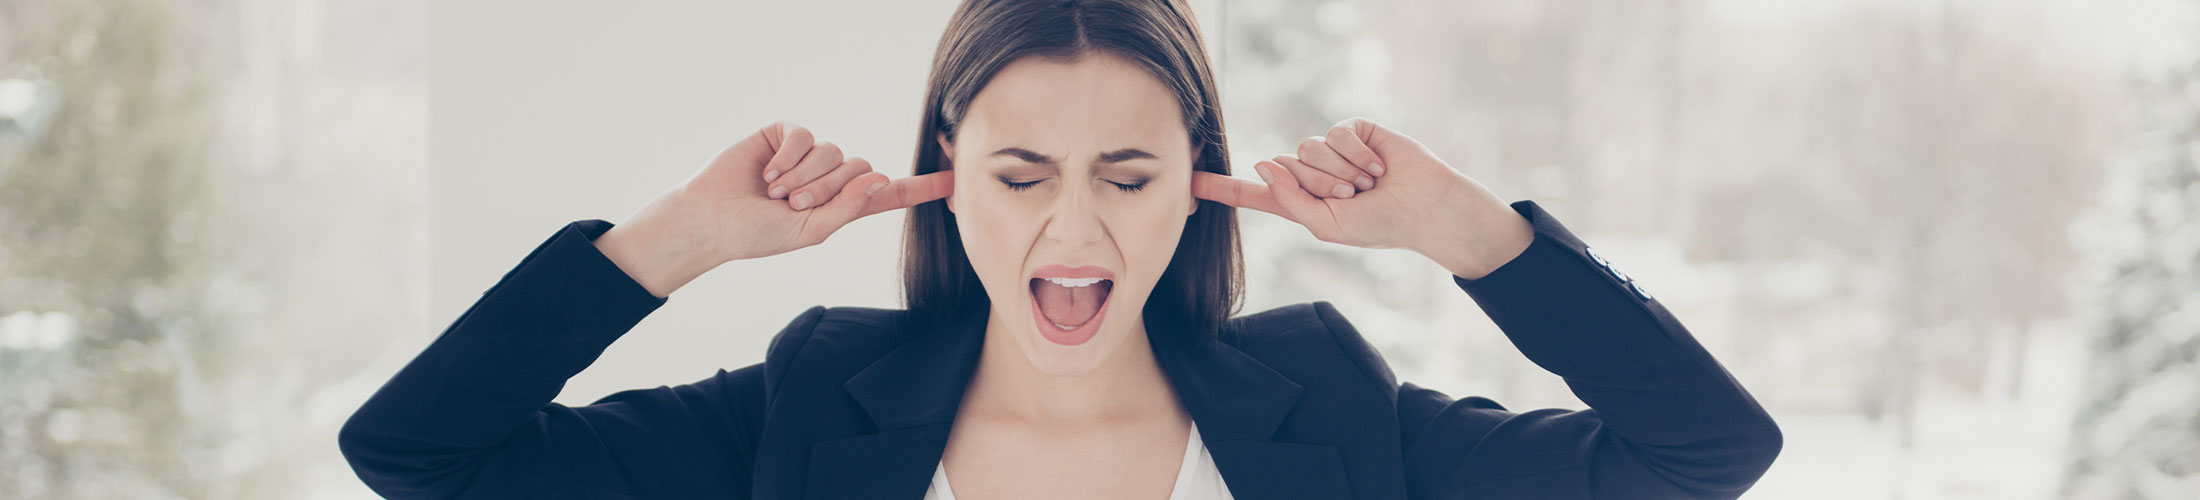 Ruido en oficinas: ¿Cómo nos afecta? ¿Cuál es el nivel de ruido recomendado?